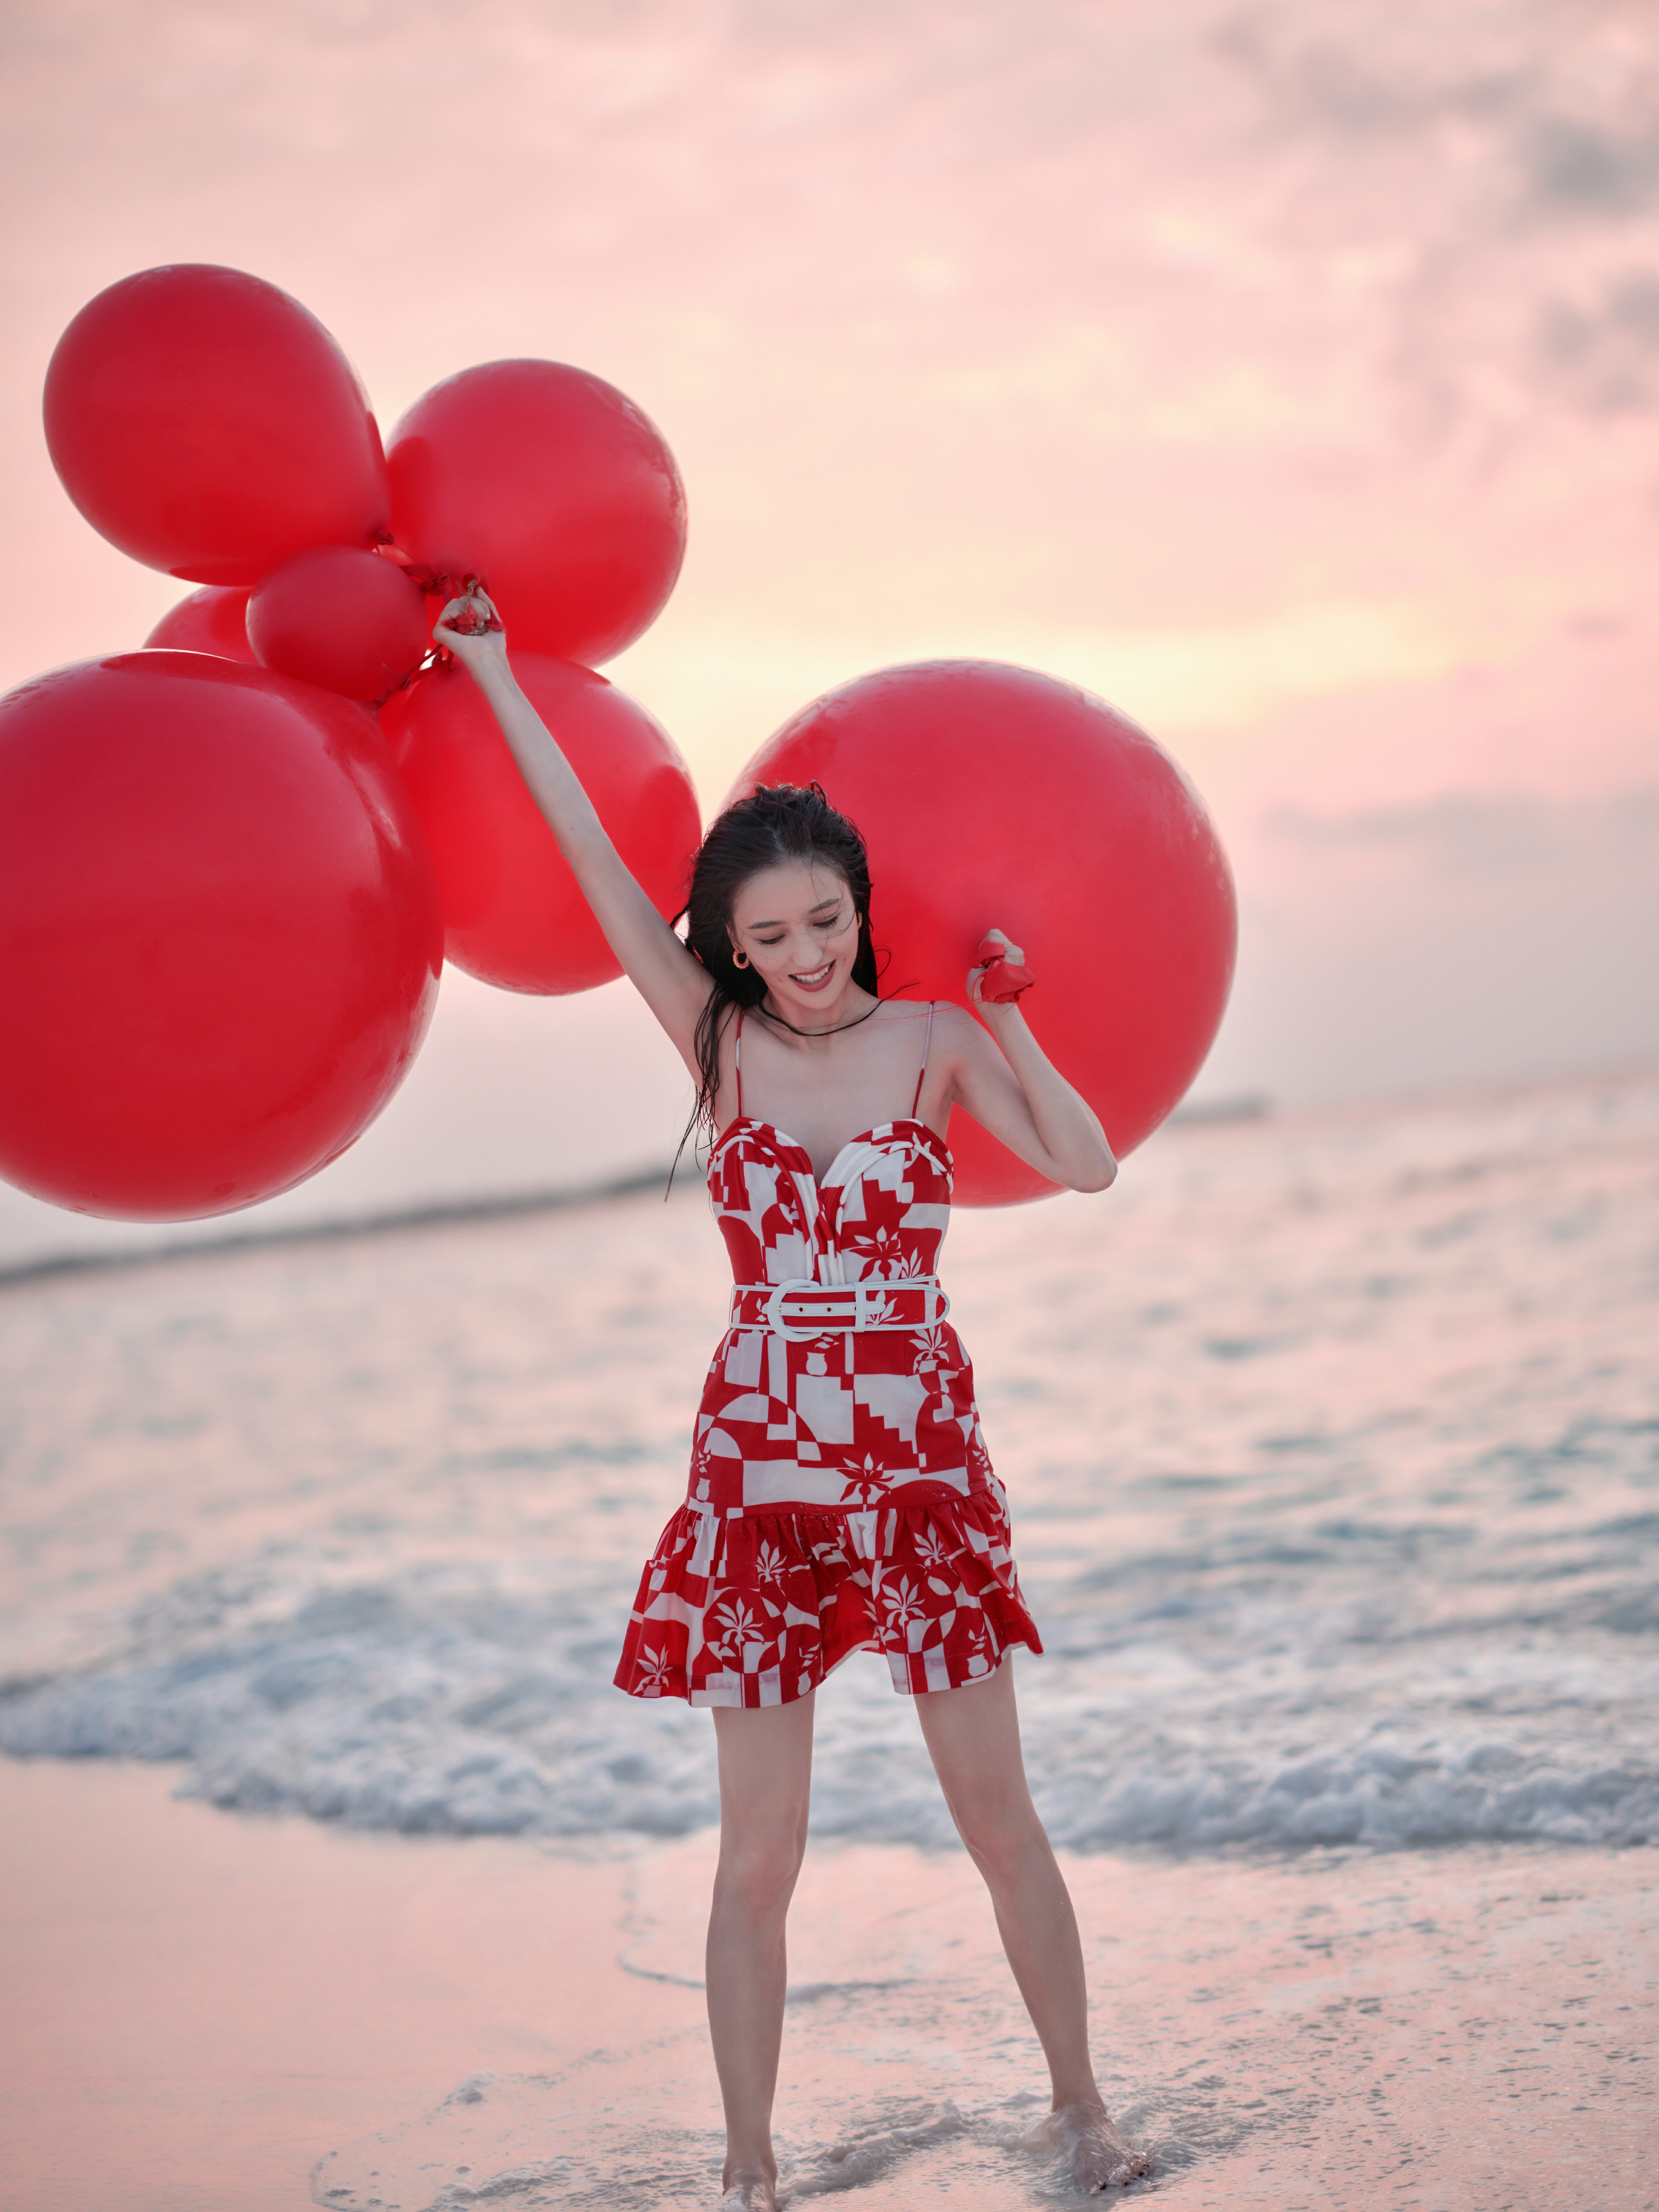 佟丽娅新春海边写真 红色吊带连衣裙笑容甜美,1 (8)